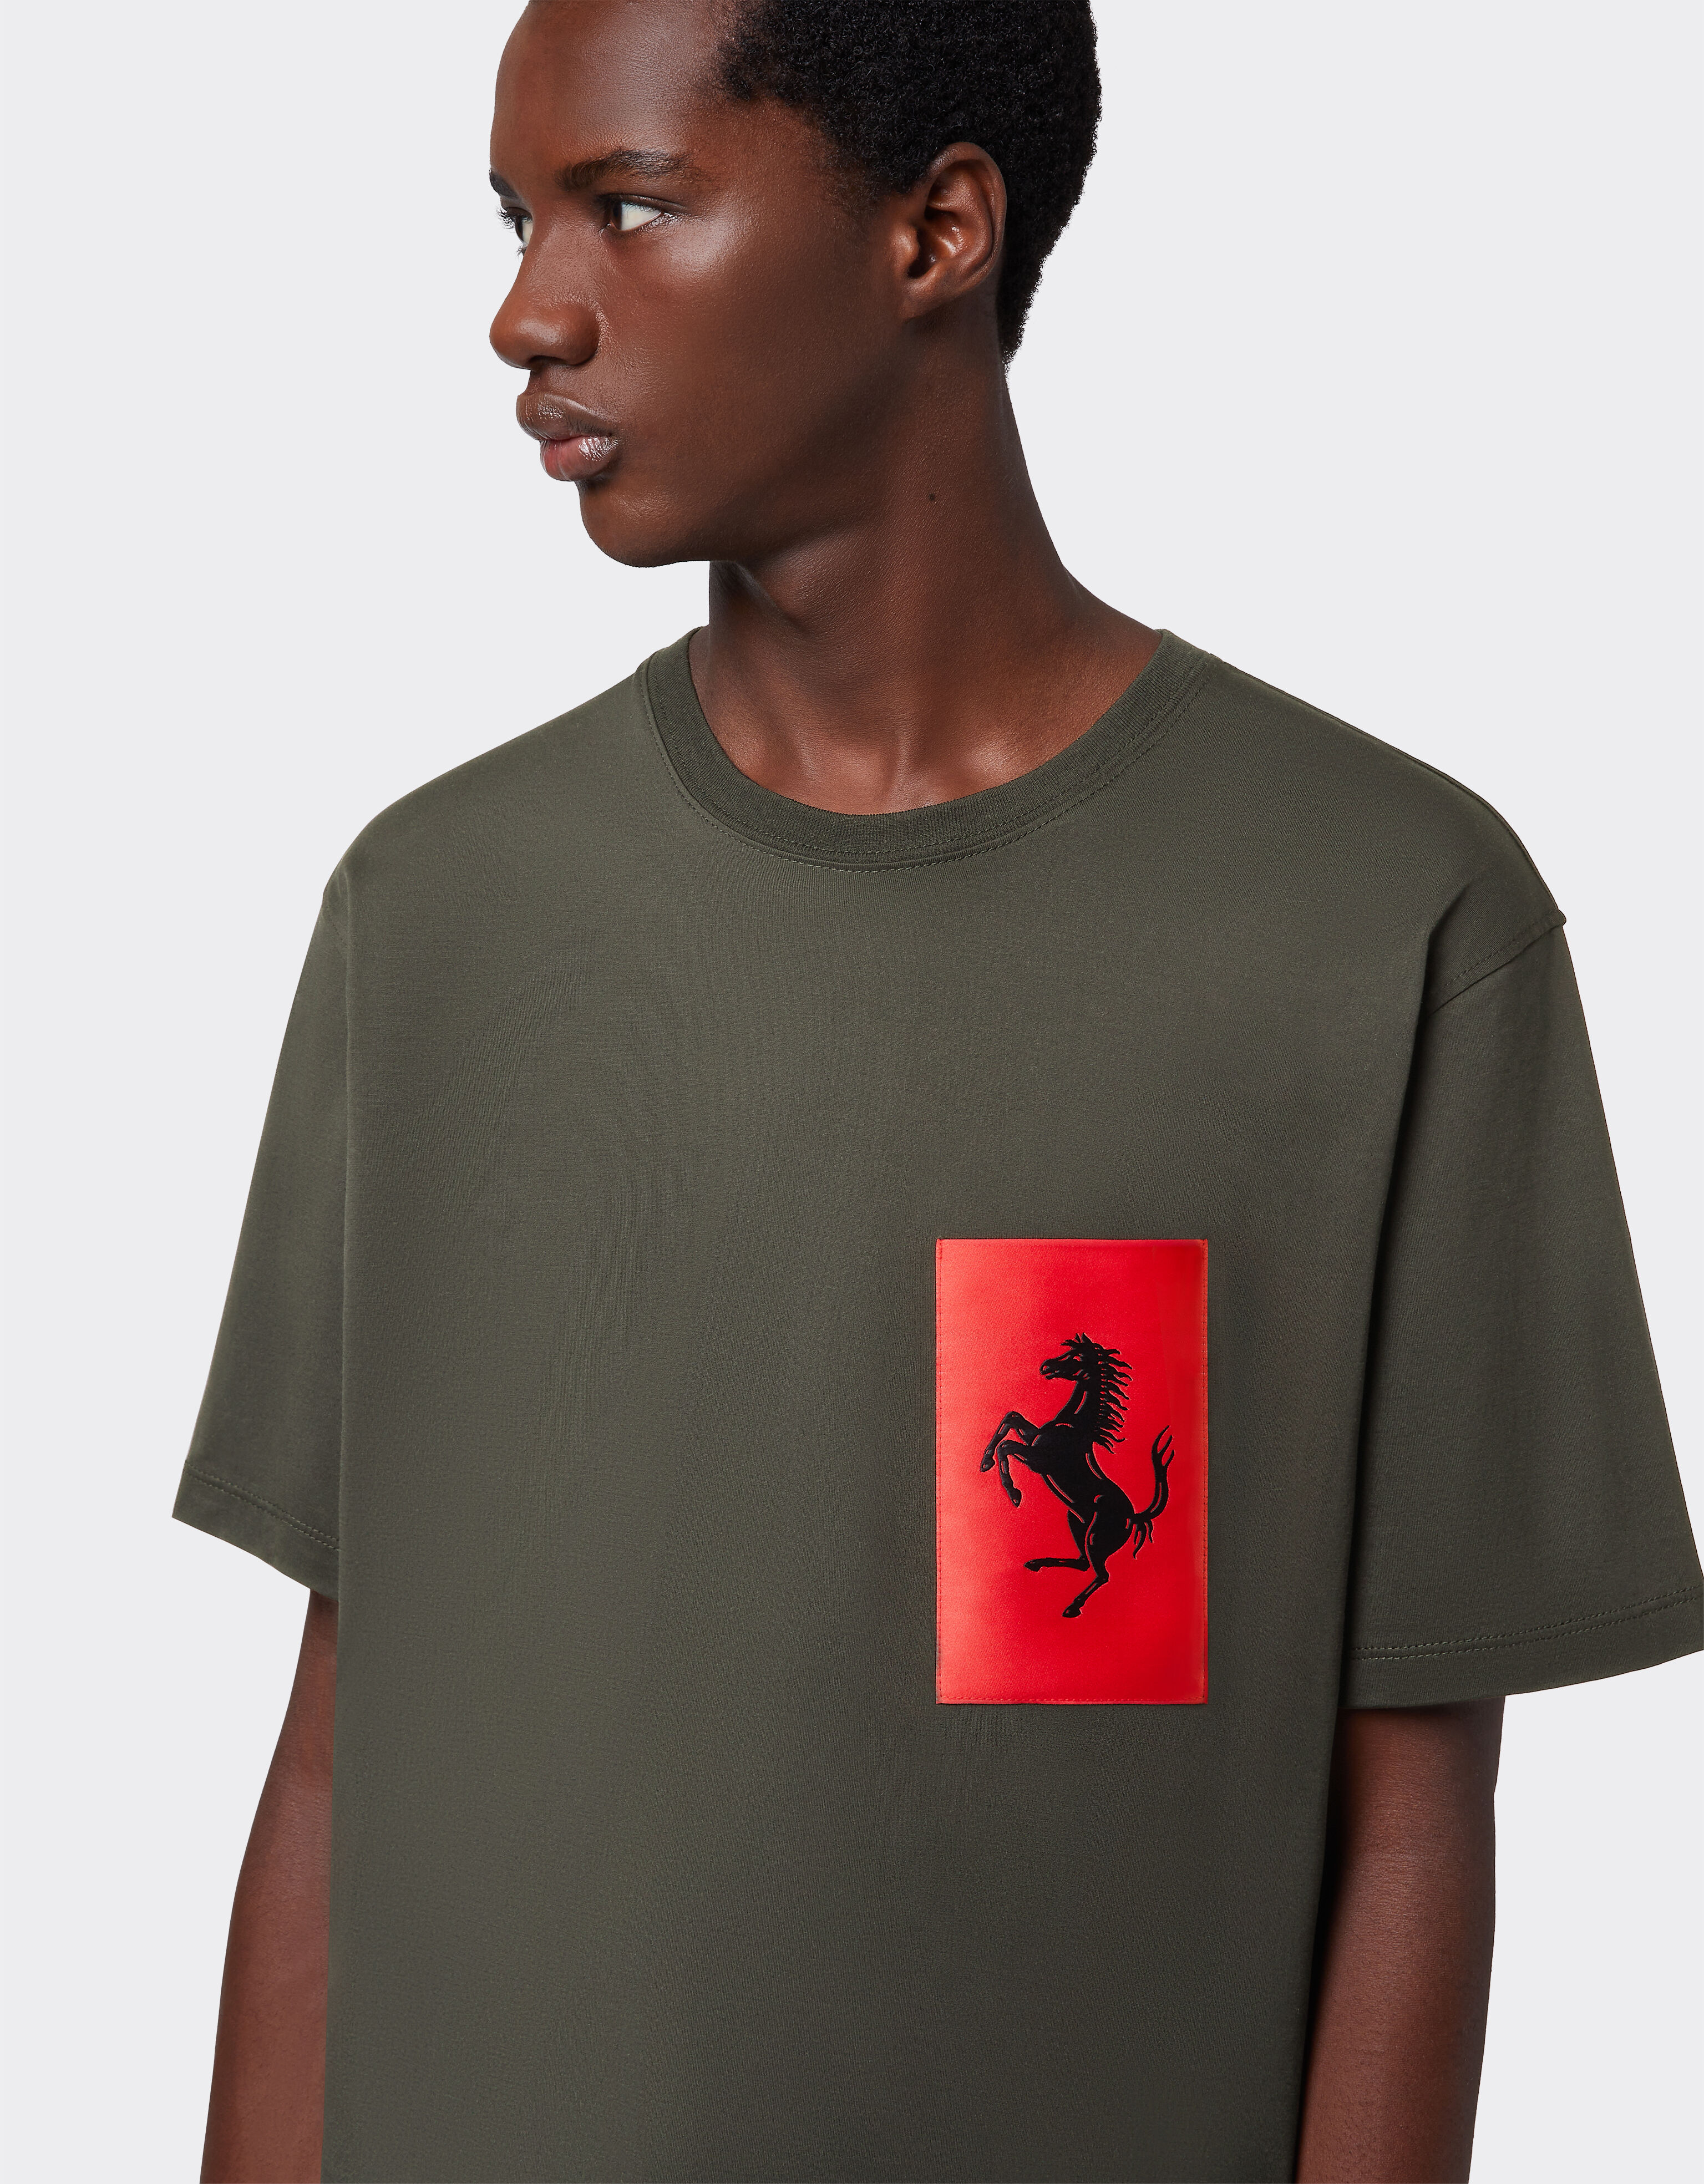 Ferrari T-shirt en coton avec poche Cheval cabré Vert militaire 47824f